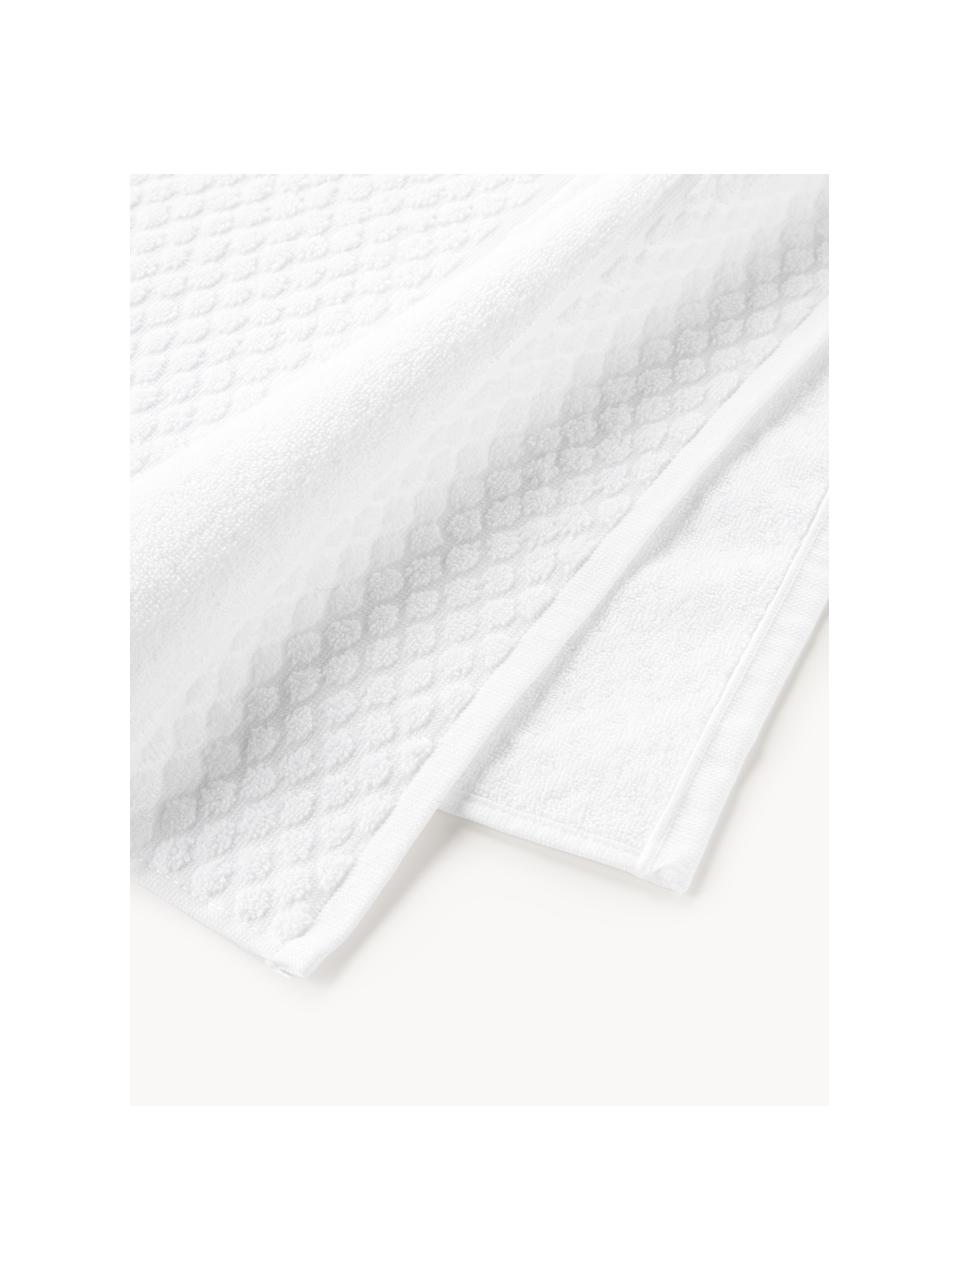 Ręcznik Katharina, różne rozmiary, Biały, Ręcznik, S 50 x D 100 cm, 2 szt.